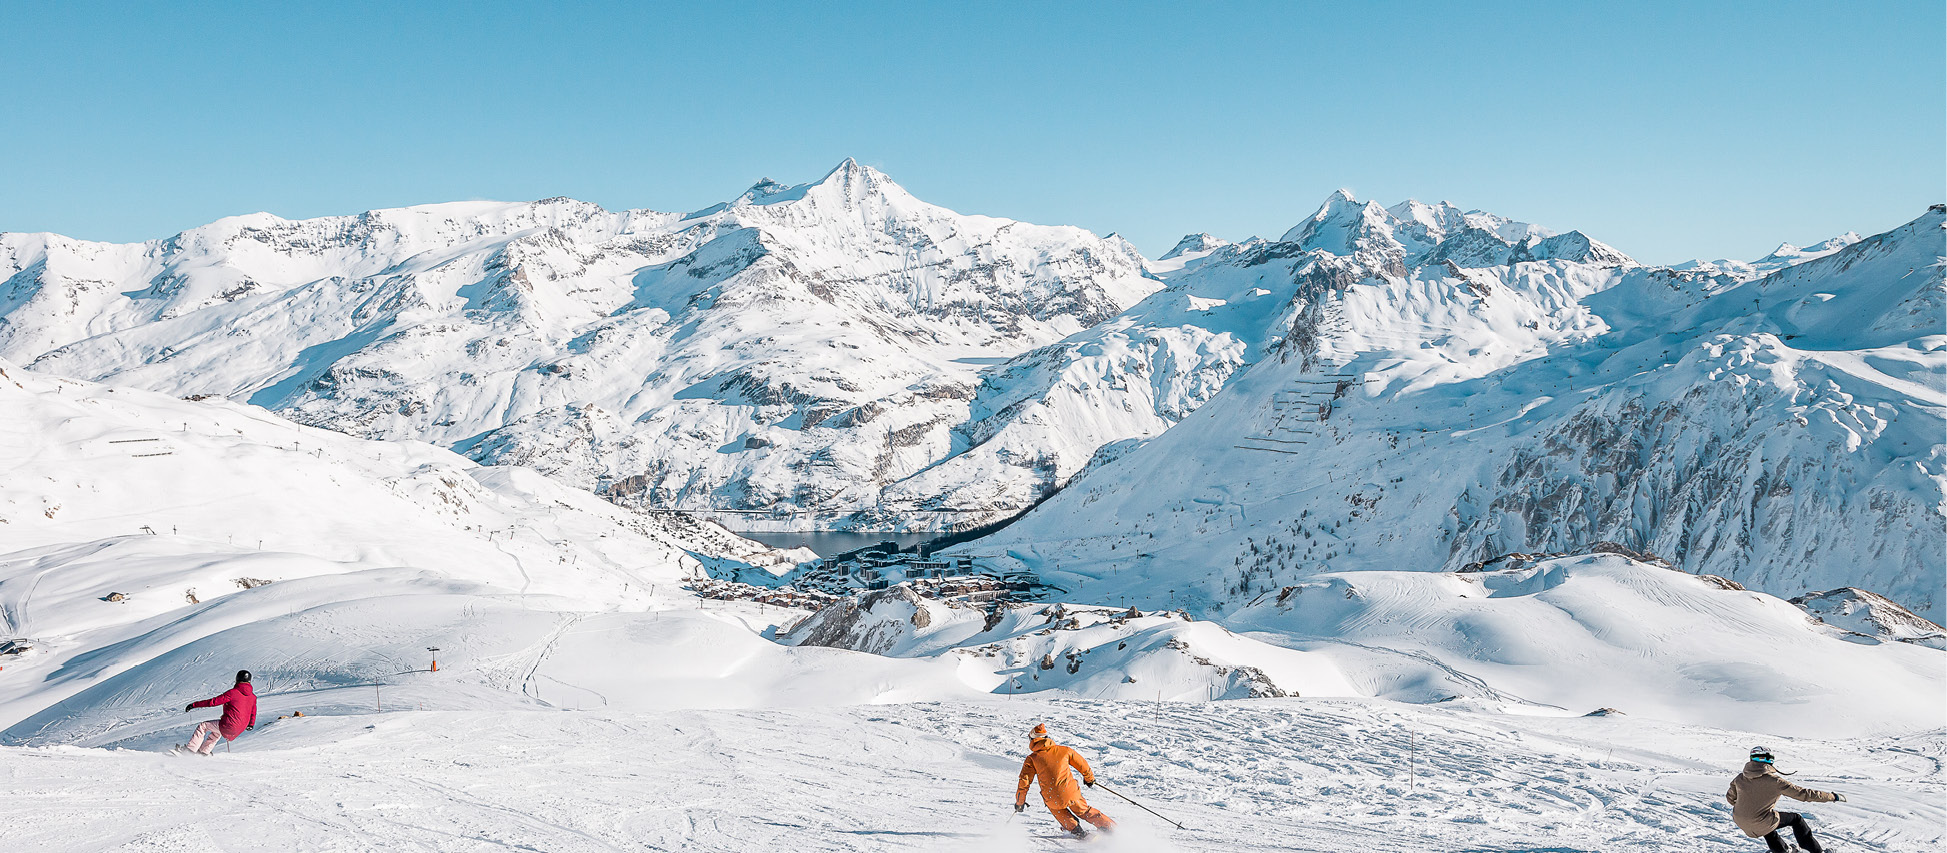 Discover the Tignes ski touring trail